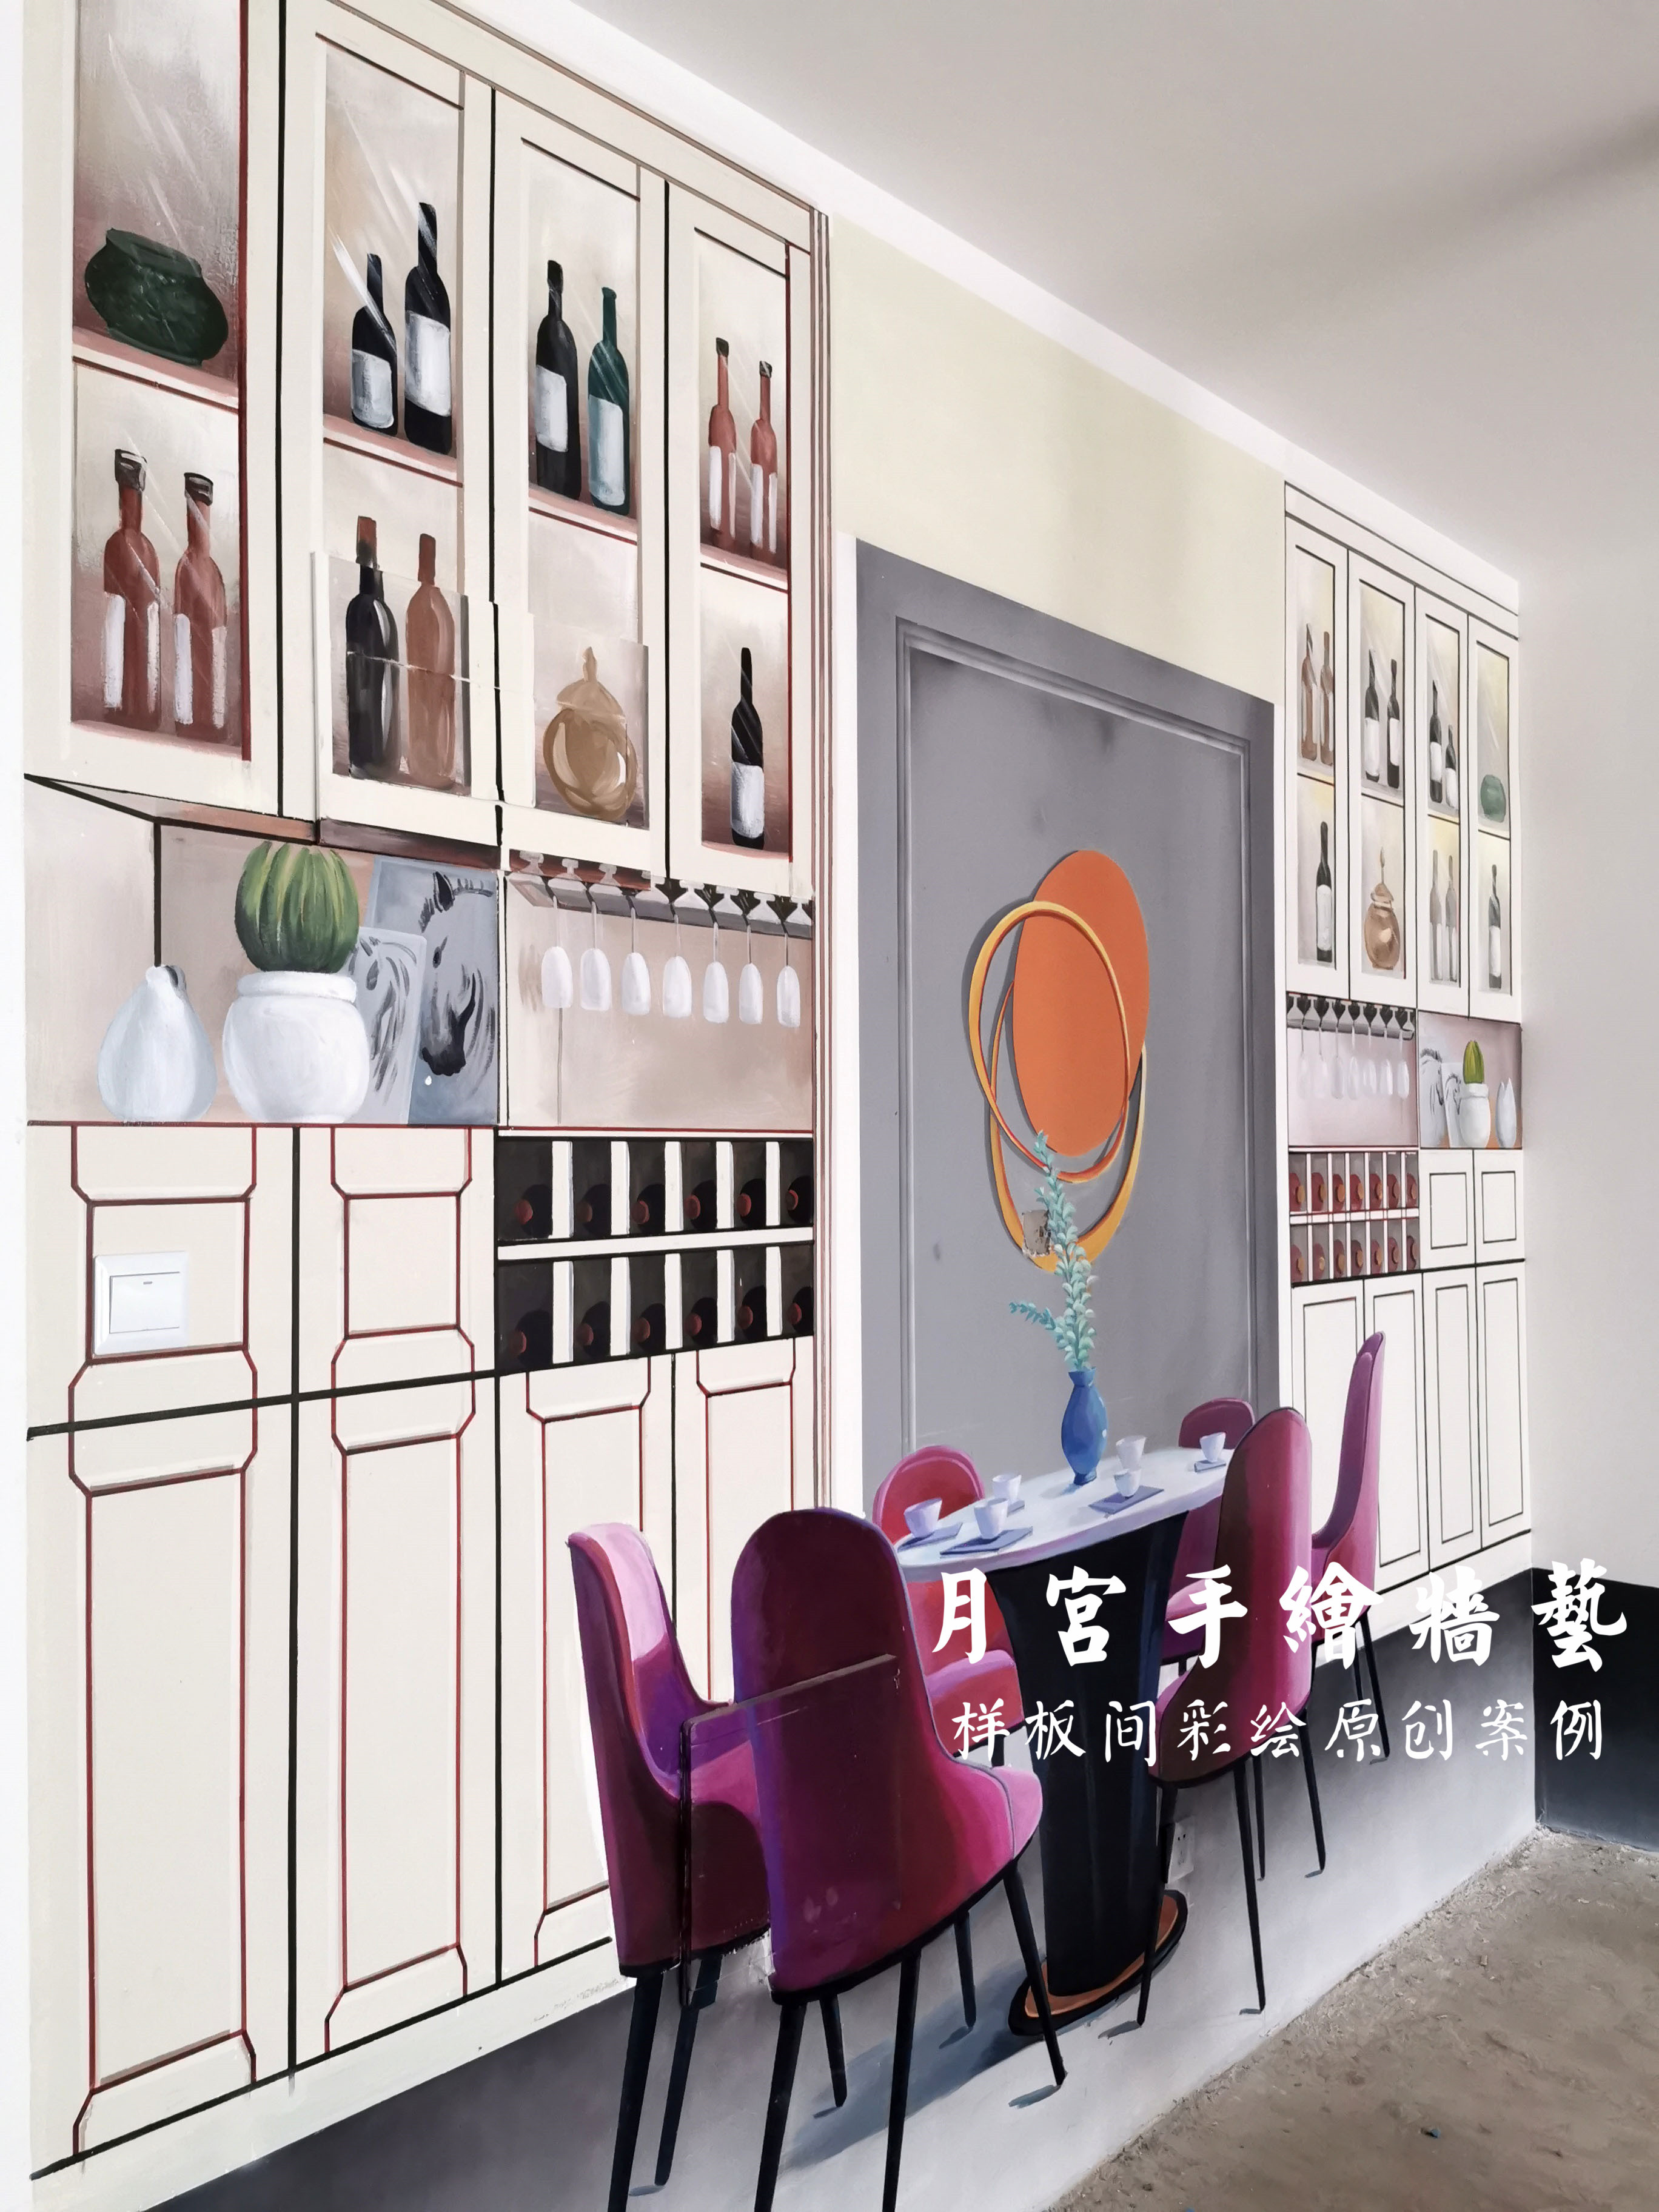 清水样板房—样板间彩绘—圣桦名城3d写实样板间彩绘